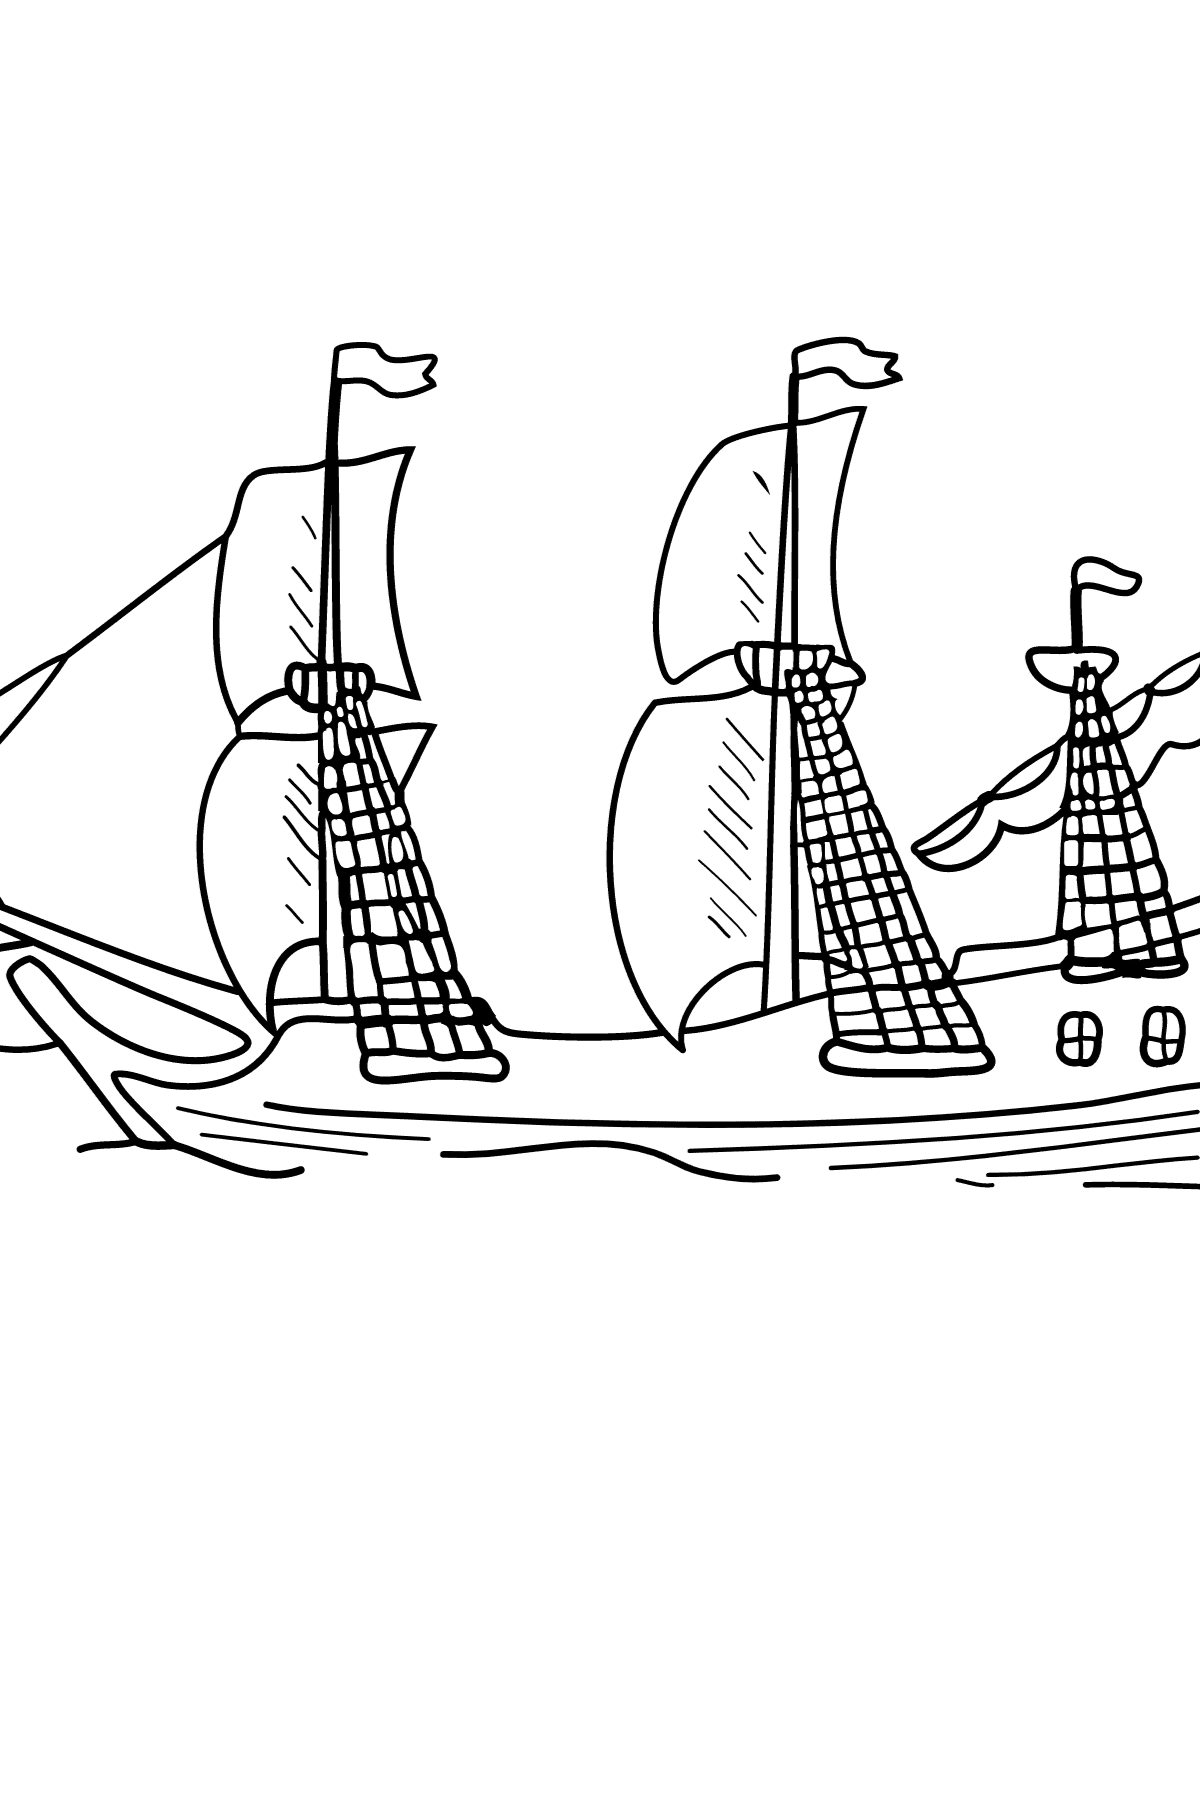 Ausmalbild des schiffes - Galeone mit Segeln - Malvorlagen für Kinder